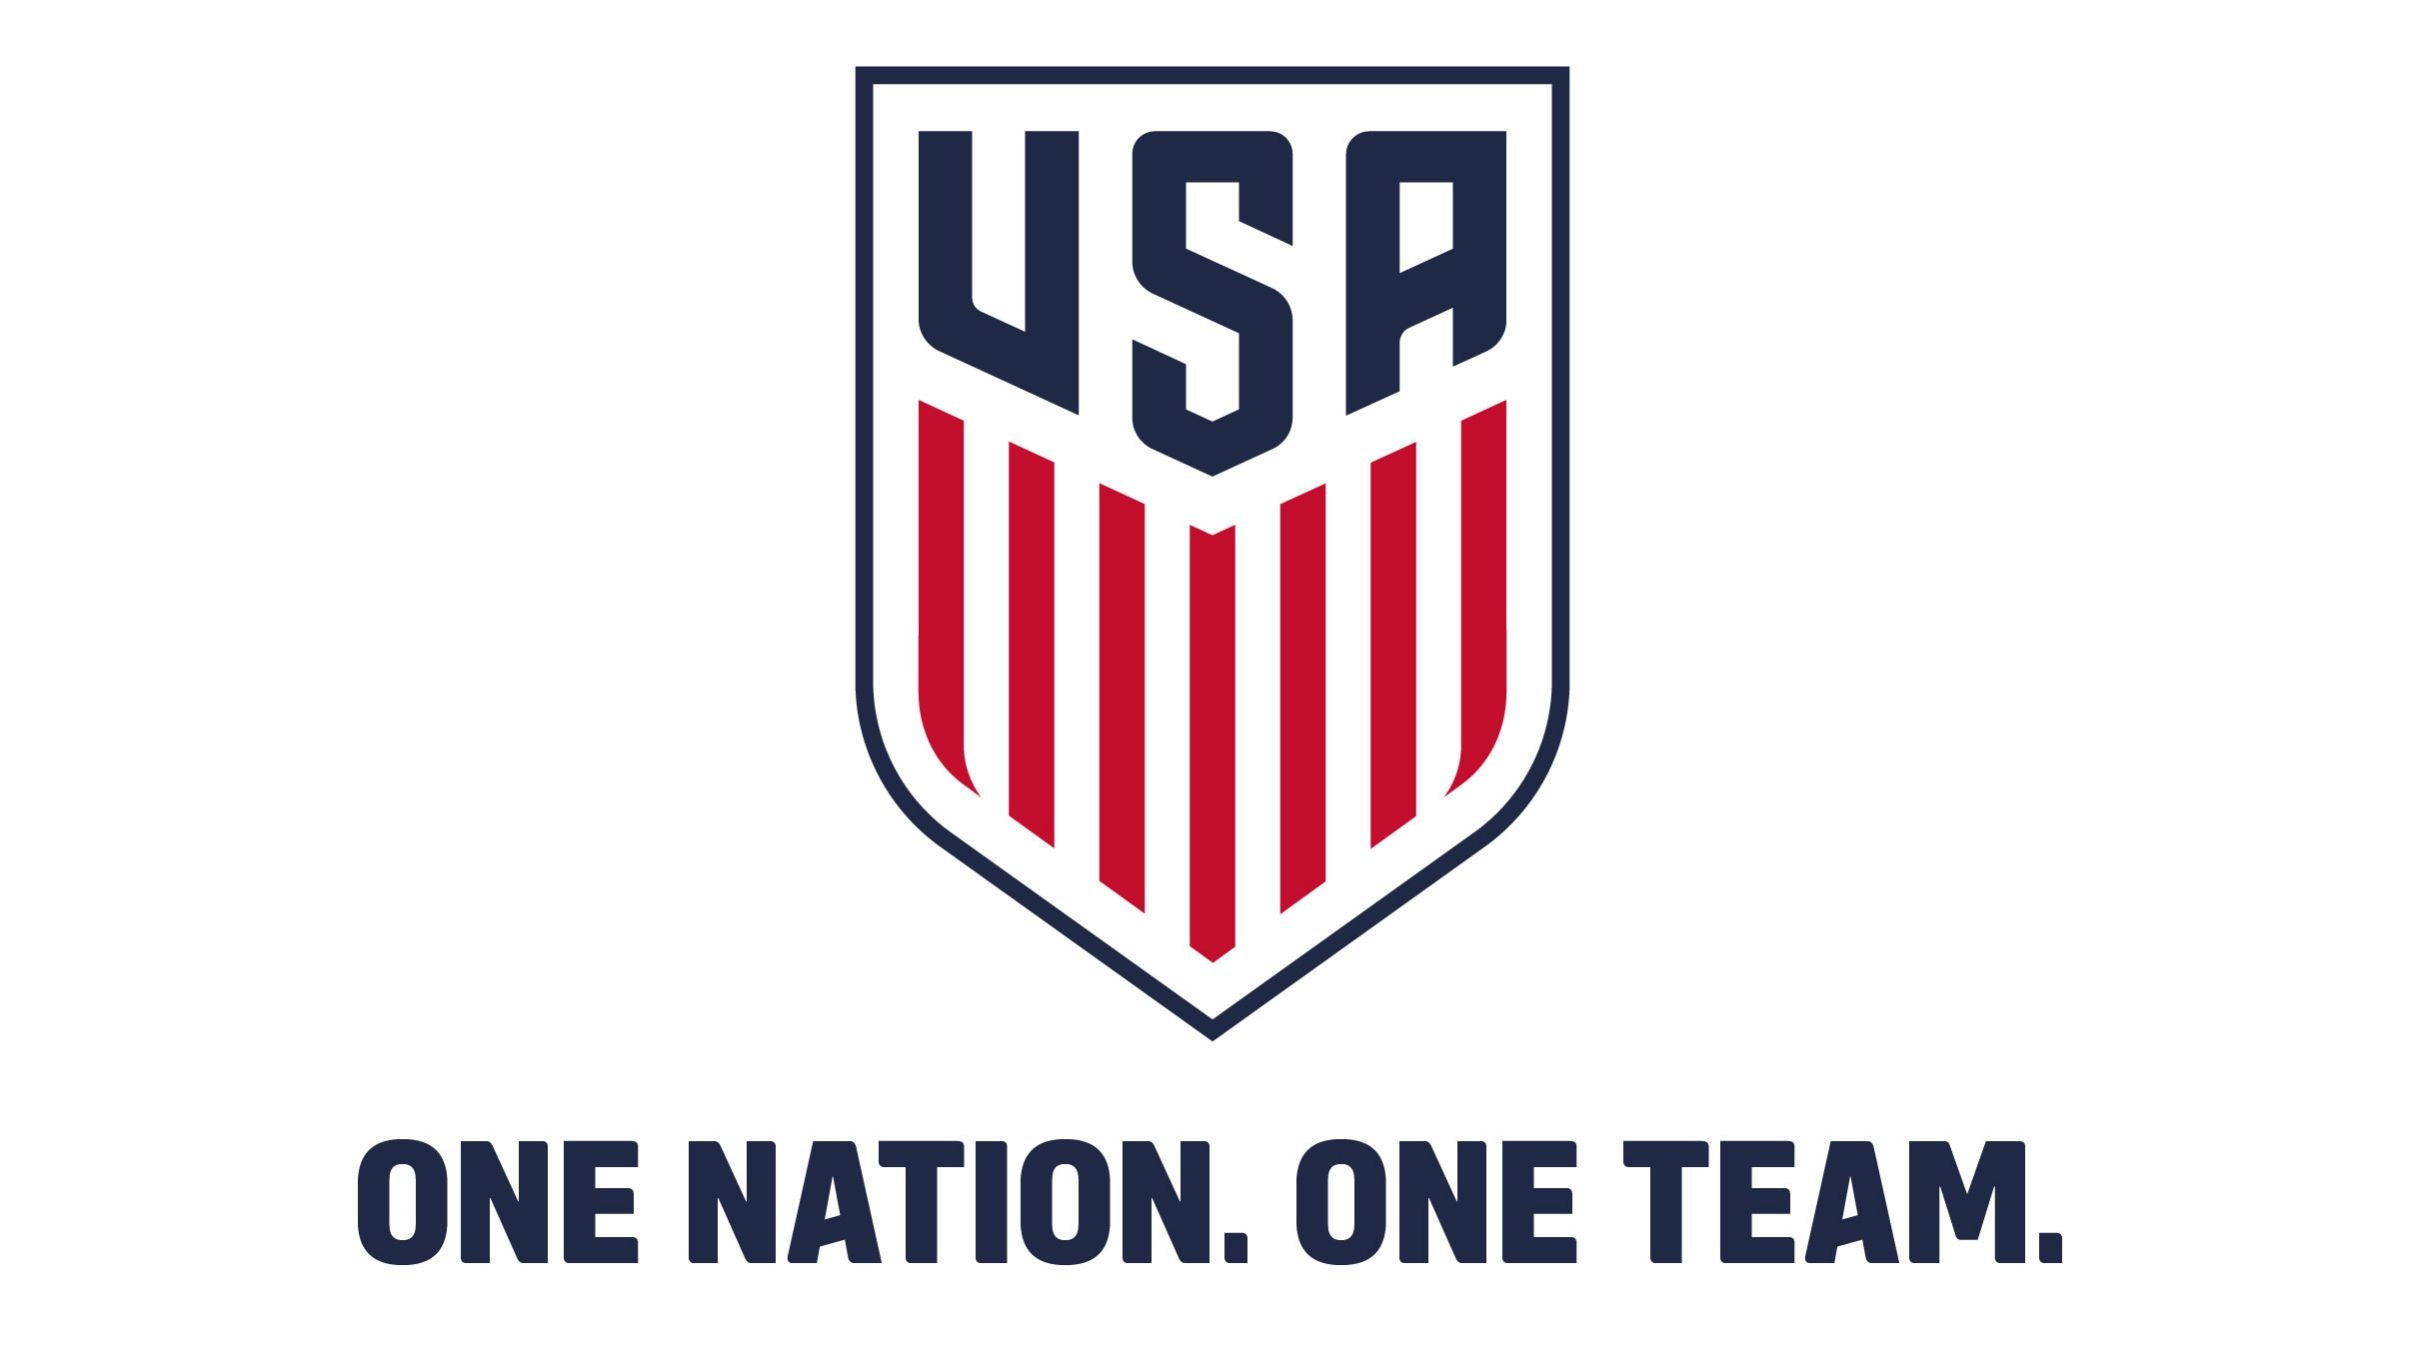 U.S. Men's National Team vs Slovenia in San Antonio promo photo for VISA presale offer code